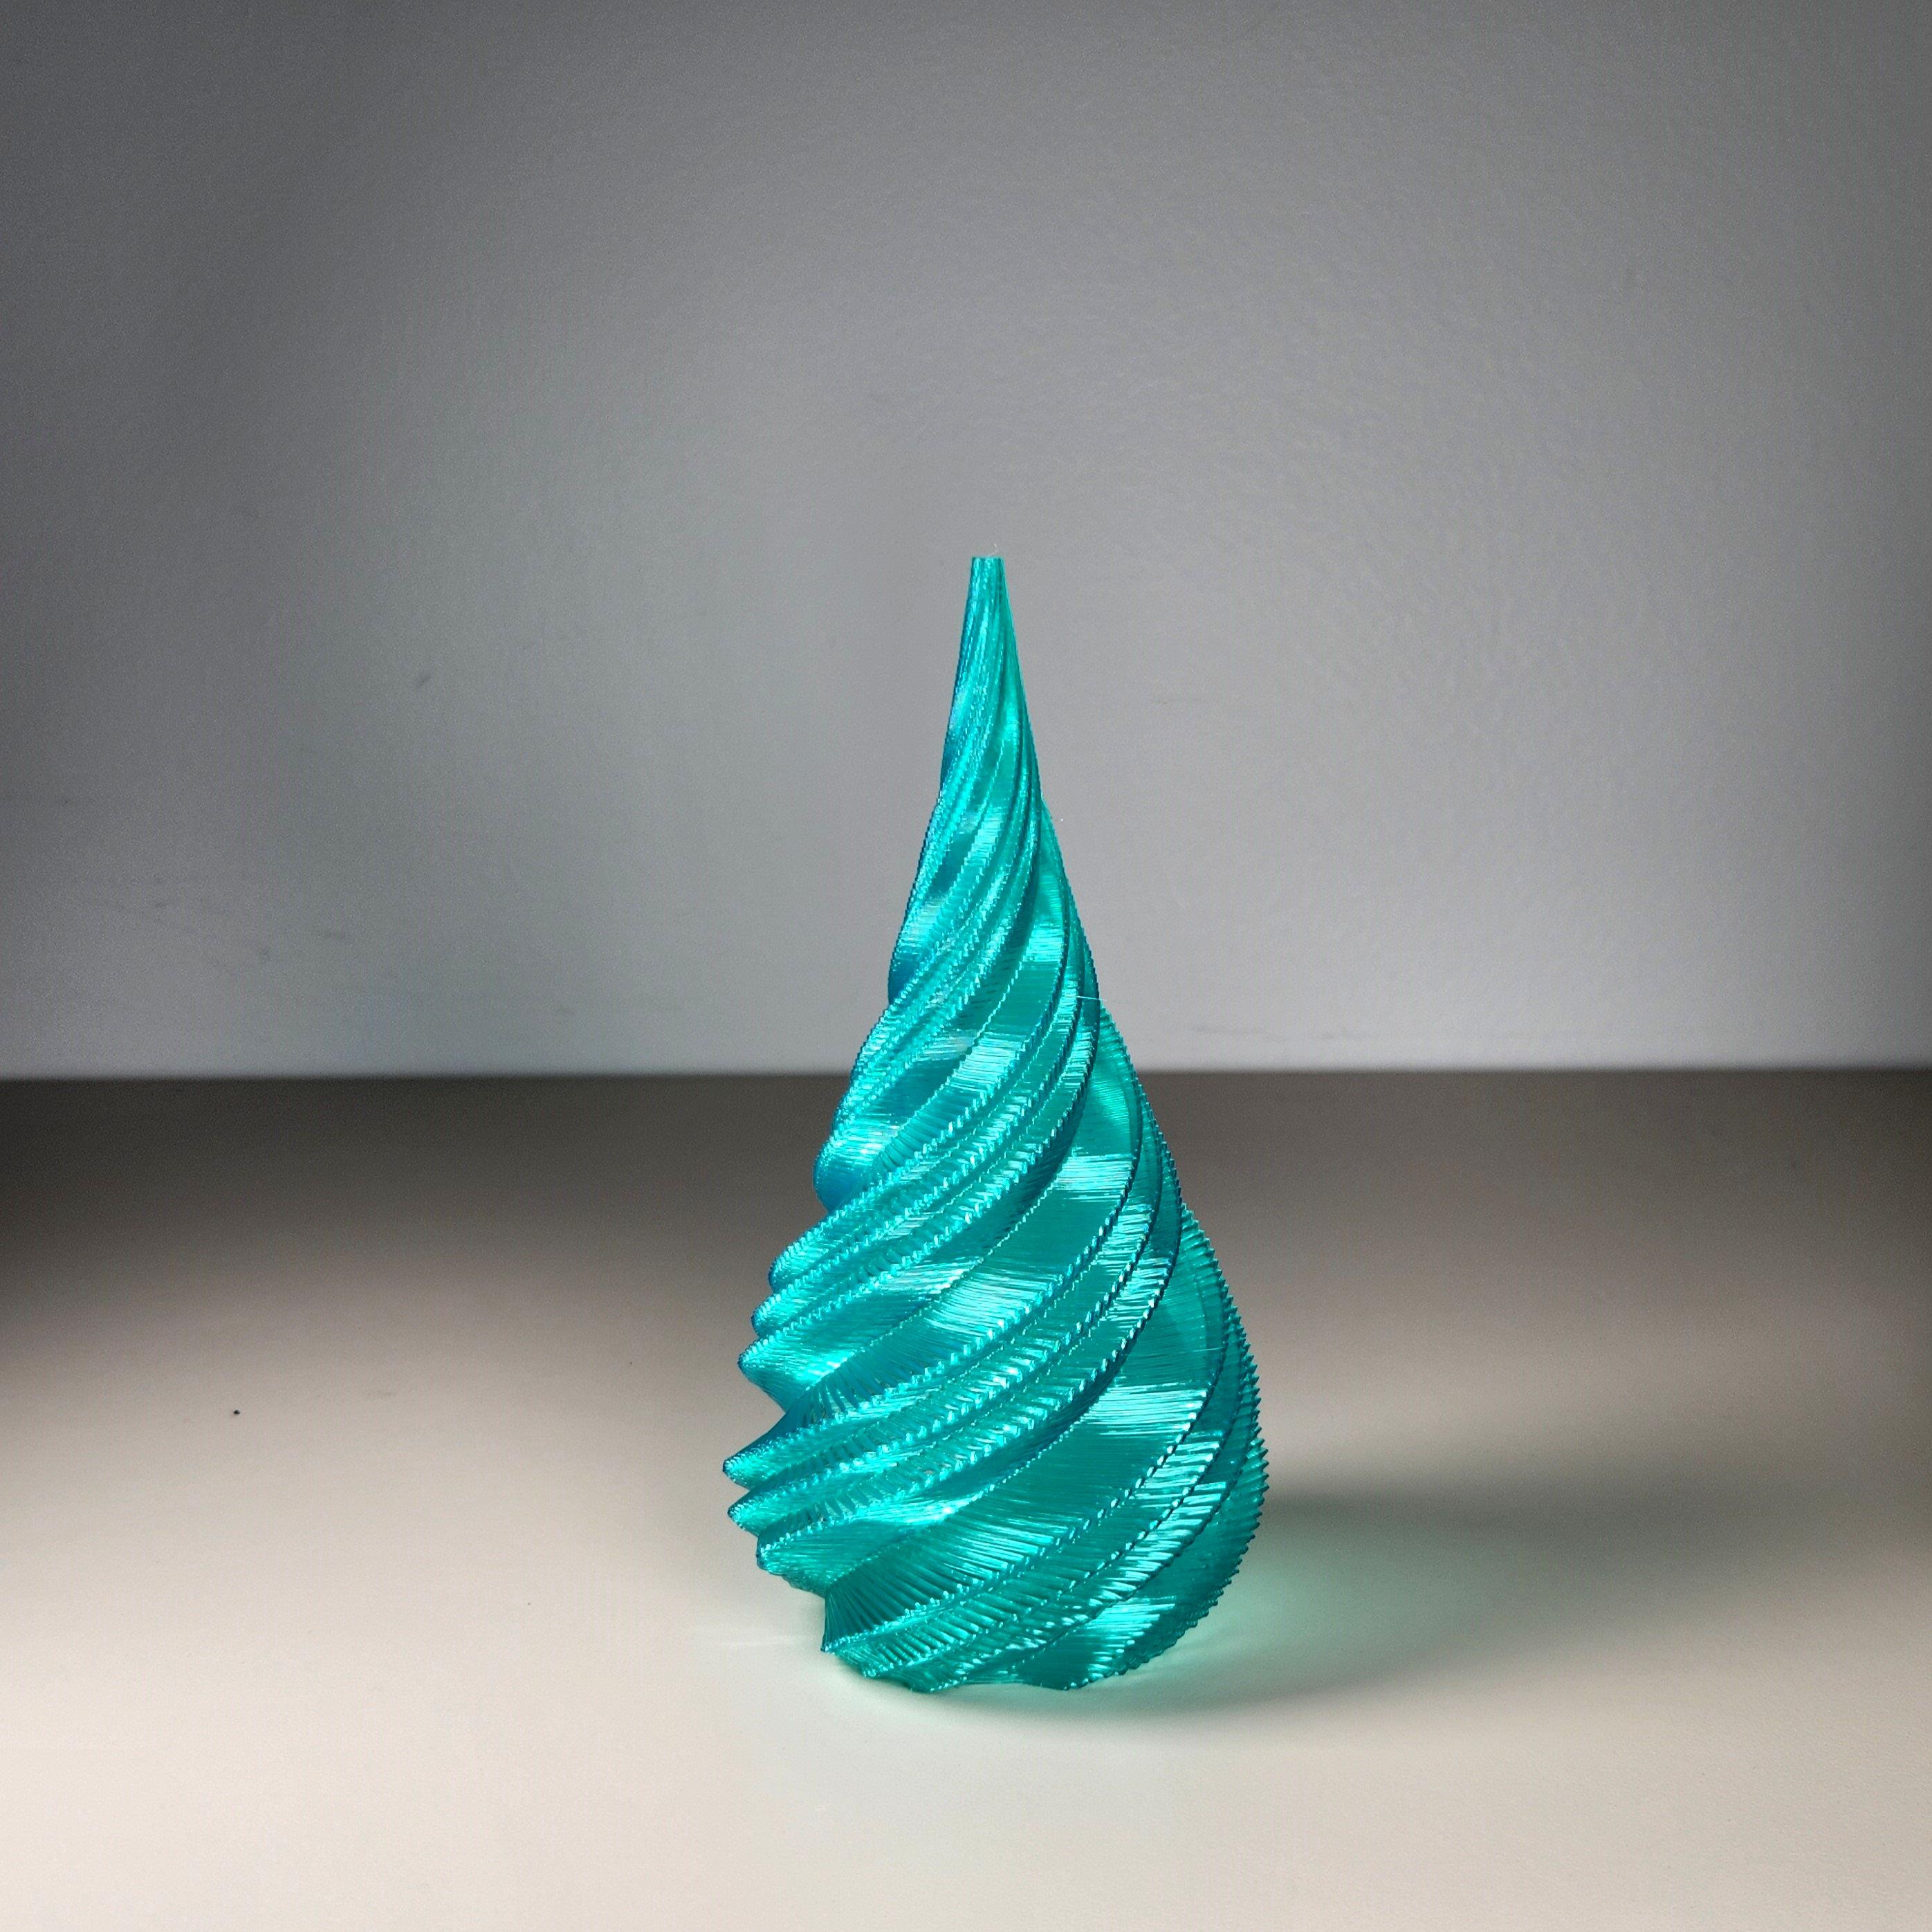 Twisty Christmas Tree 3 3d model